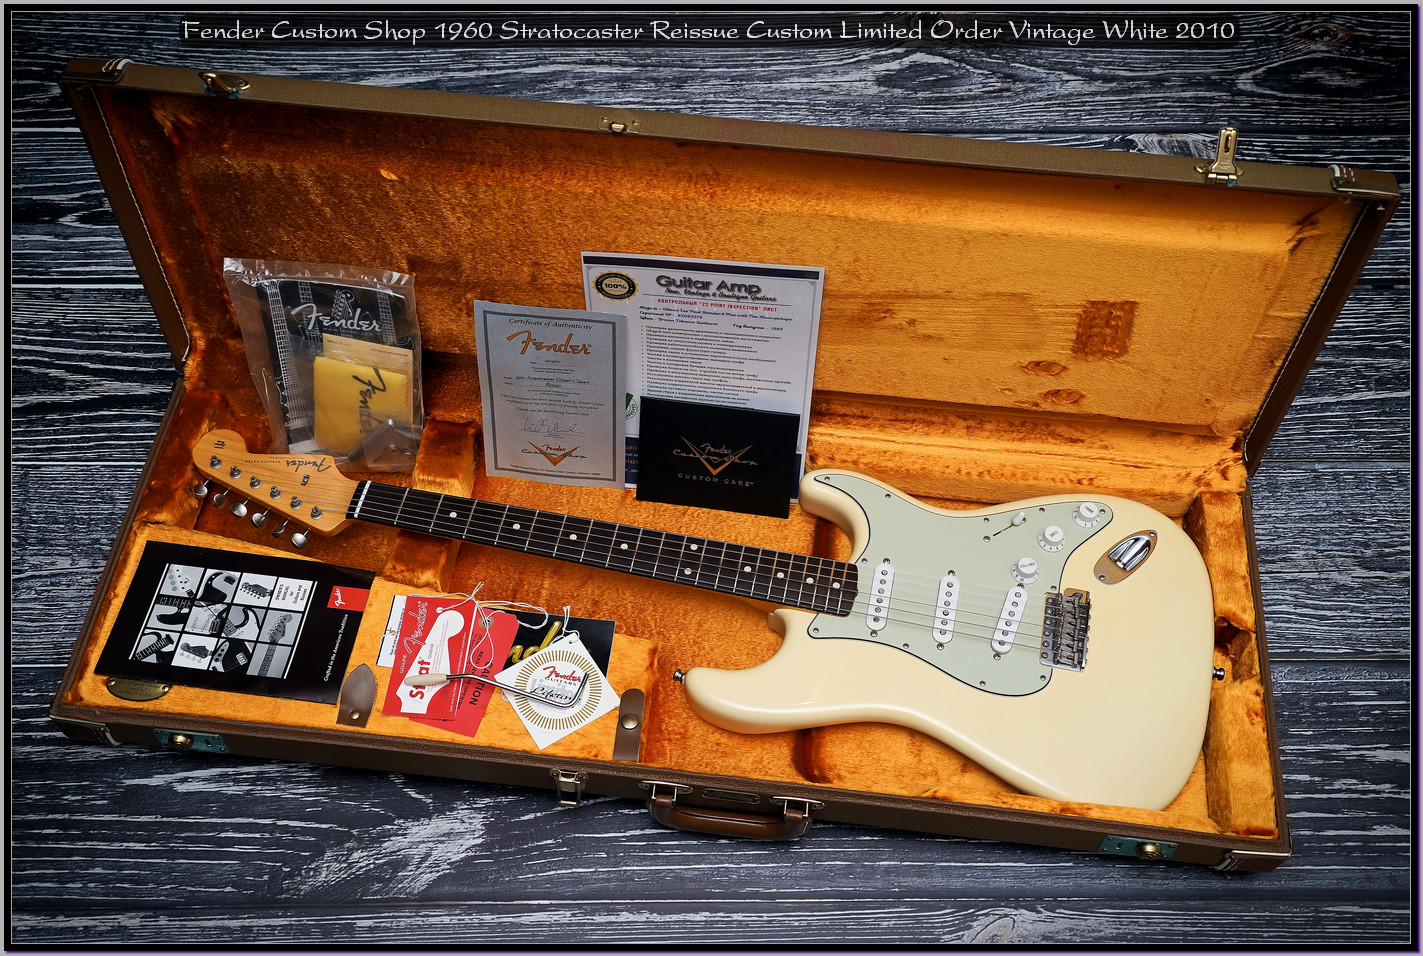 Fender Custom Shop 1960 Stratocaster Reissue Custom Limited Order Vintage White 2010 09_x1400.jpg